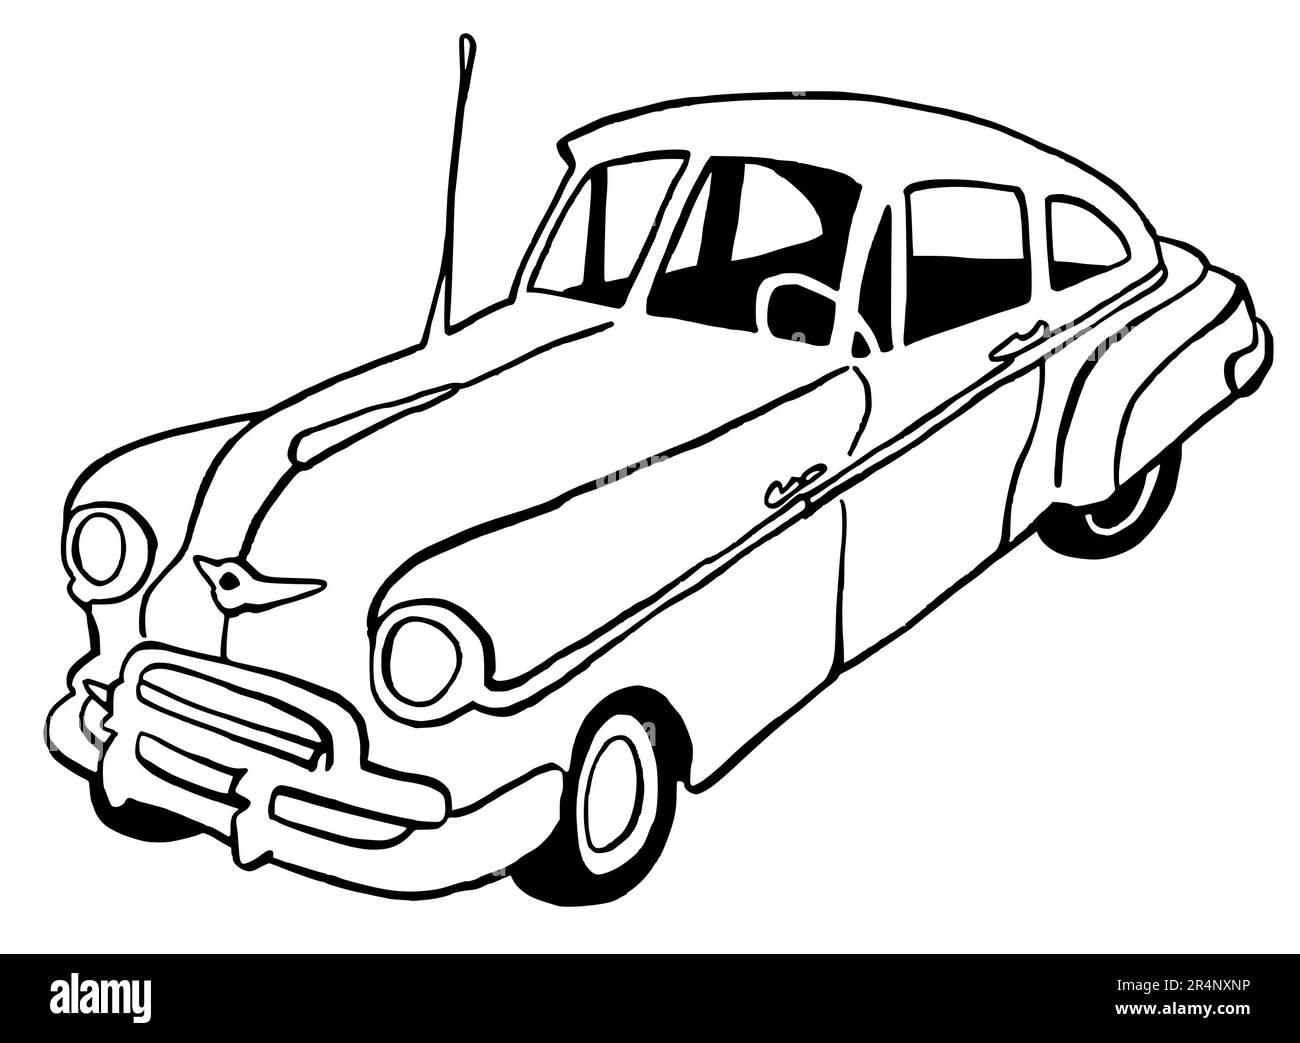 Handgezeichnete Illustration eines Retro-Autos, amerikanisch, volle Größe, isoliert auf weißem Hintergrund, mit schwarzer Strichzeichnung Stockfoto